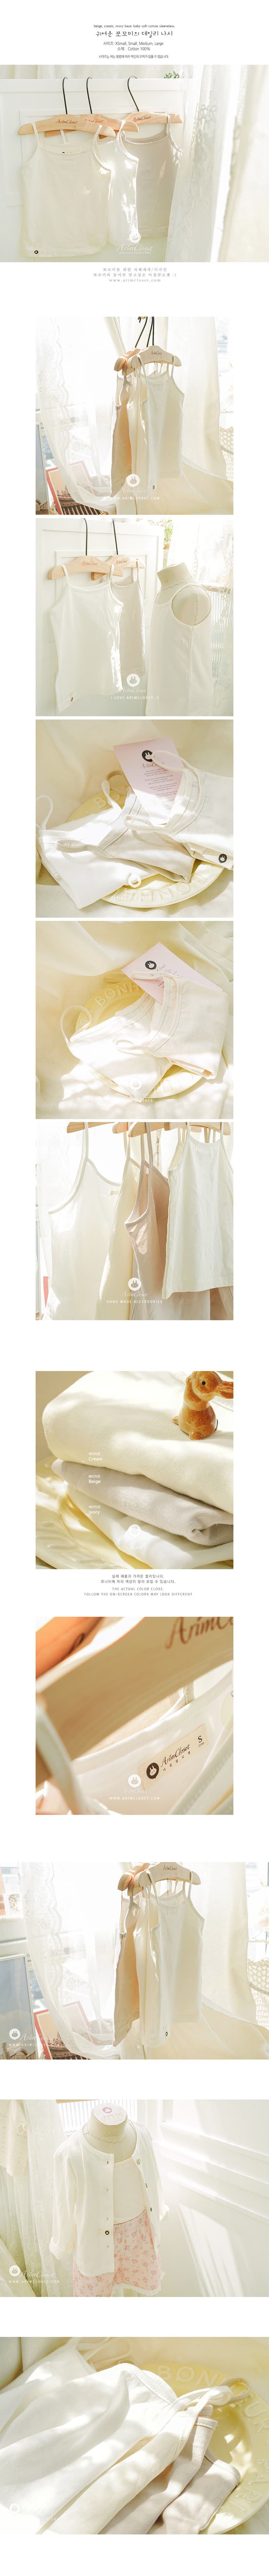 Arim Closet - Korean Baby Fashion - #babyclothing - Basic Baby Soft Sleeveless - 2